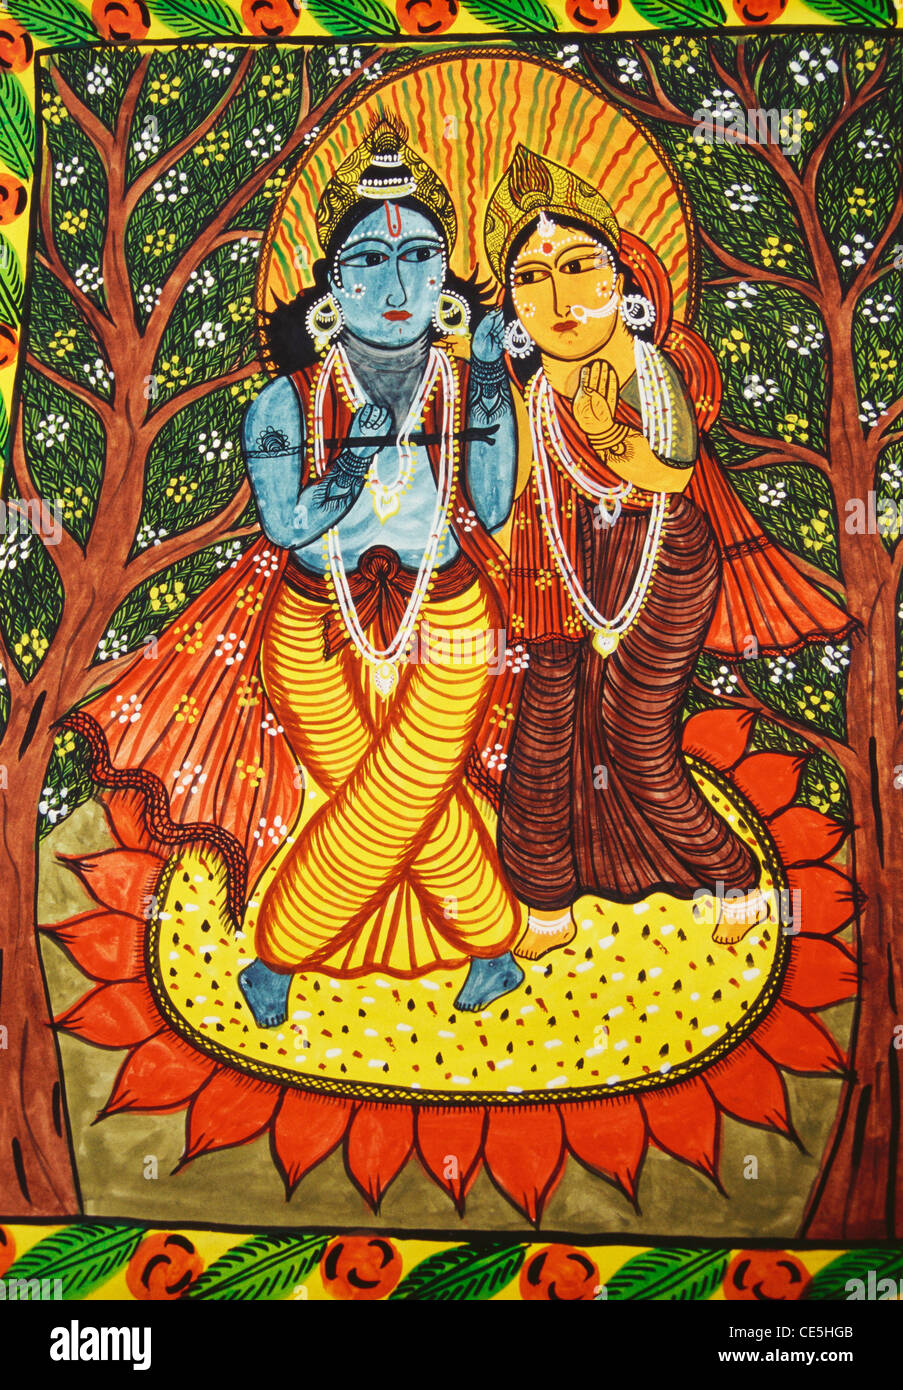 Radha Krishna scroll painting Stock Photo